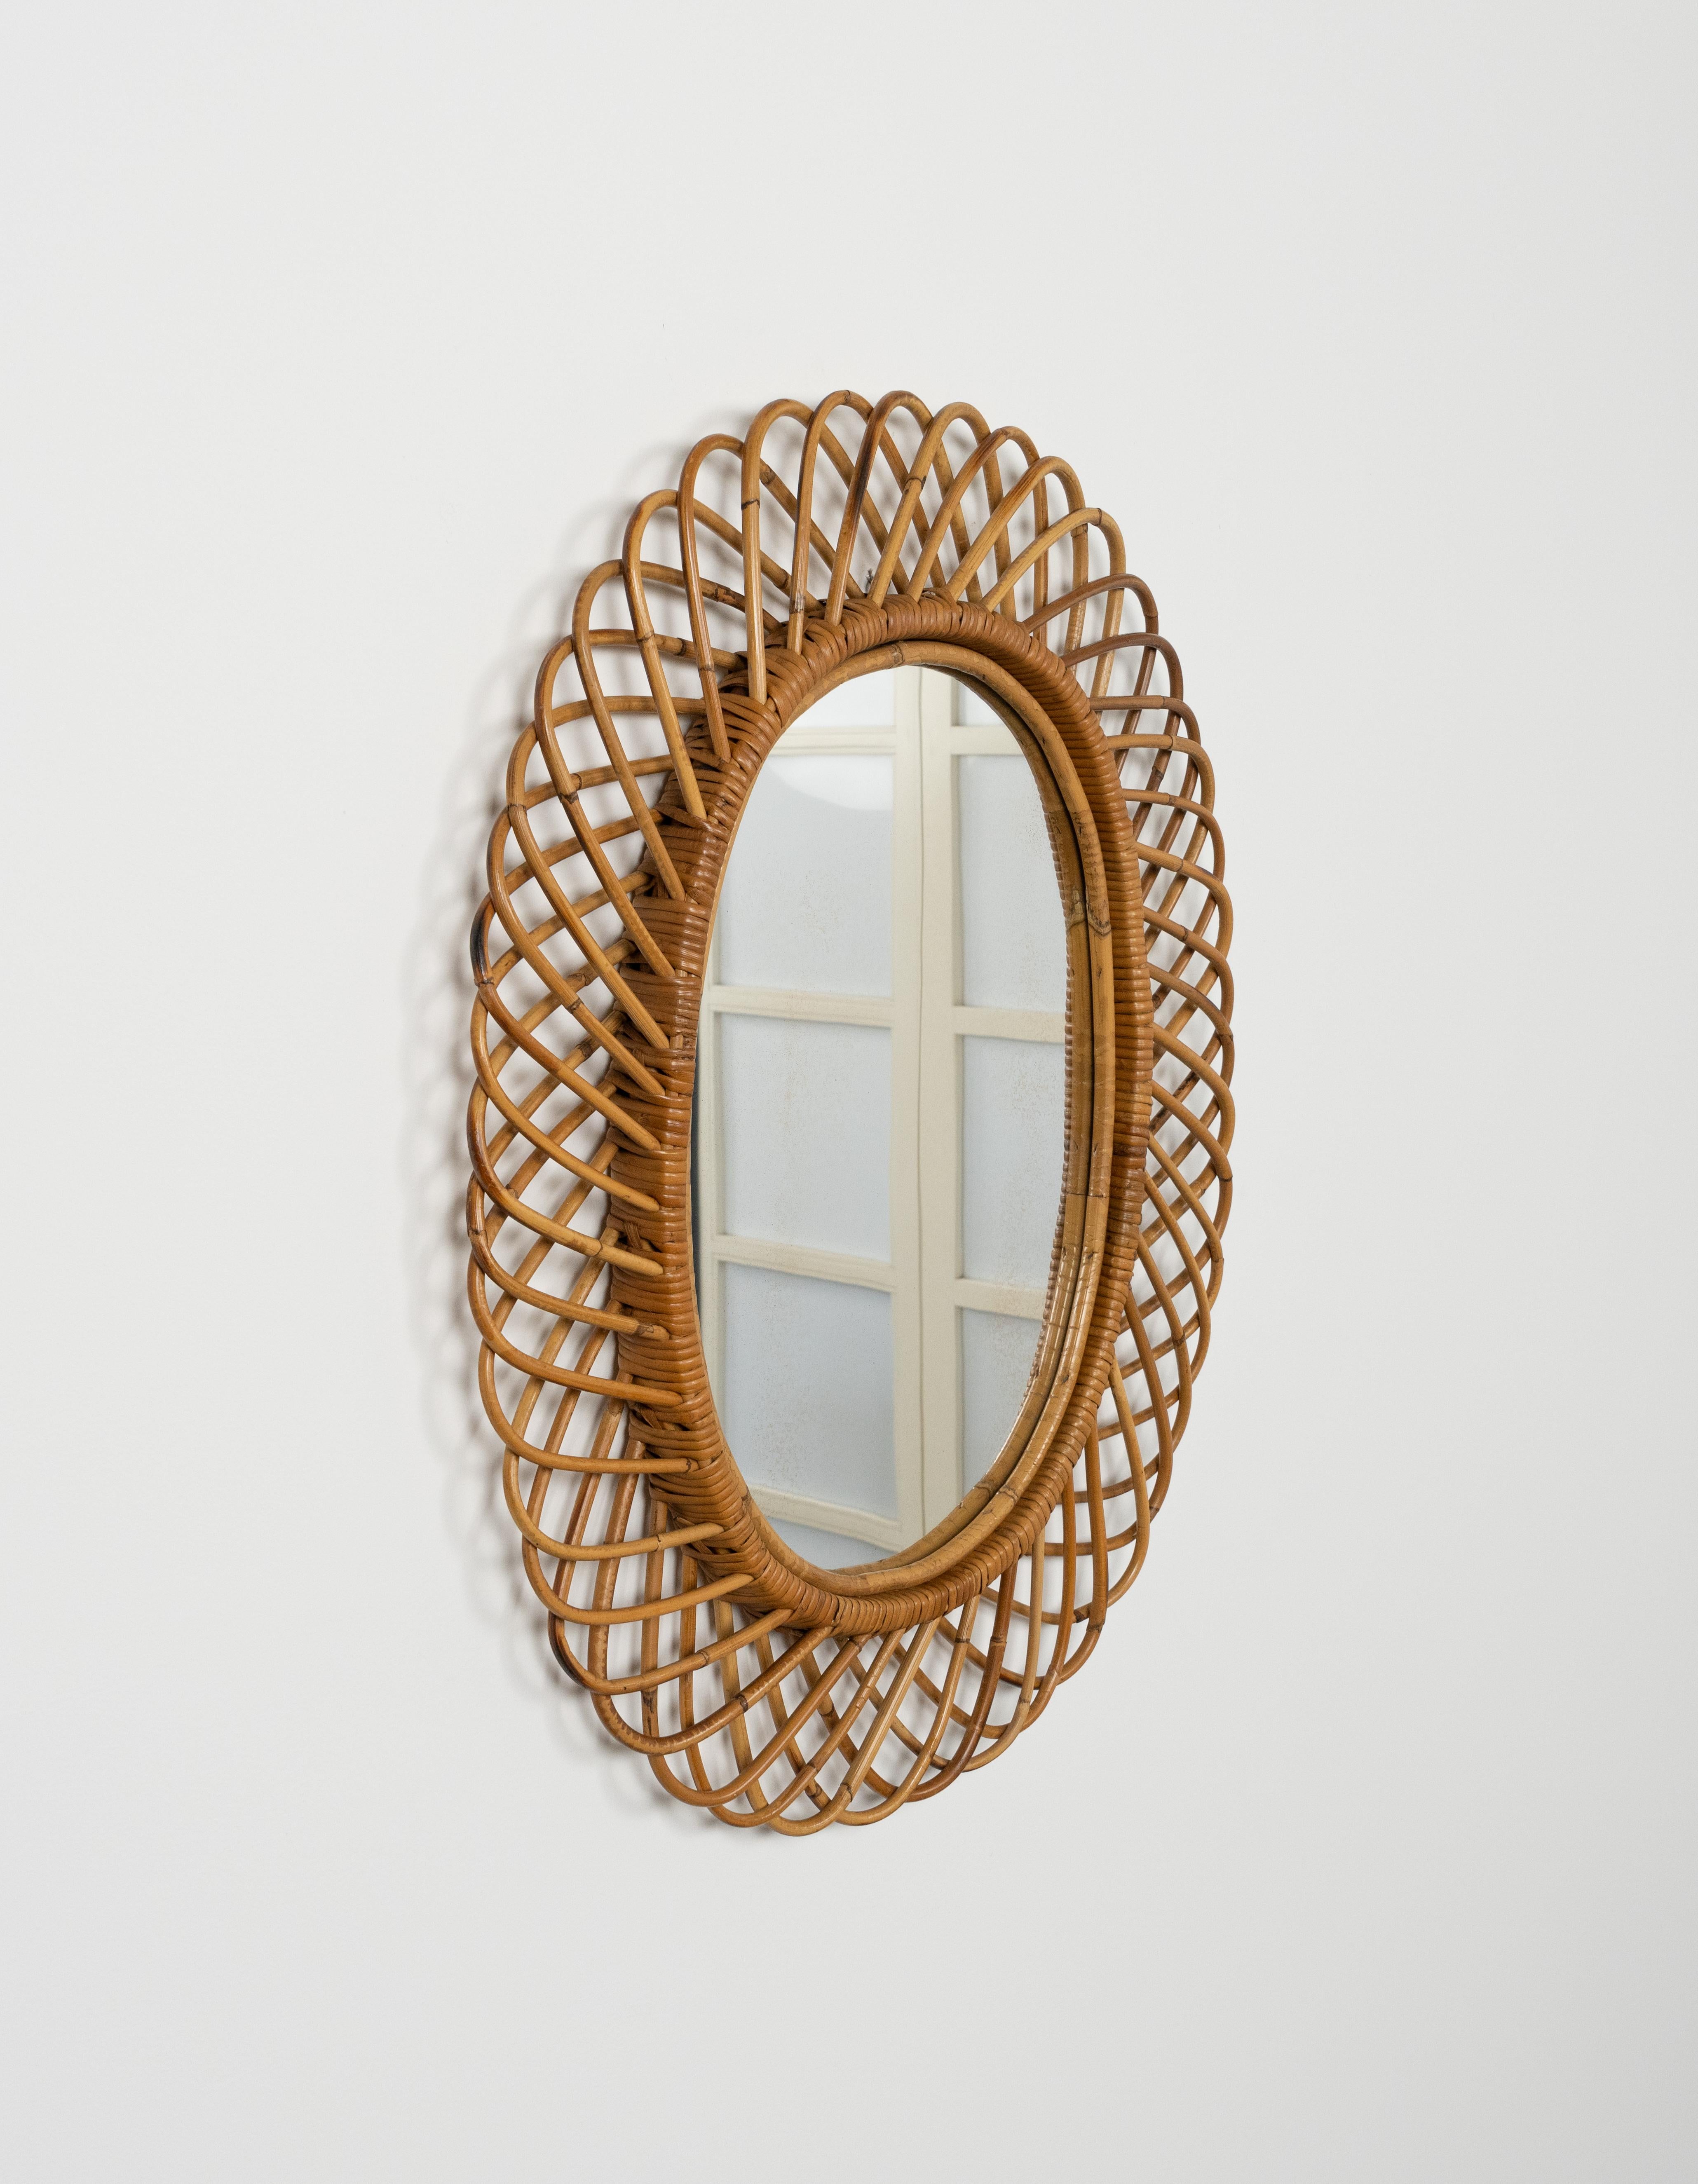 Miroir mural ovale en bambou et rotin de Franco Albini. 

Fabriqué en Italie dans les années 1960.

Le miroir, original de l'époque, présente de petits signes de décoloration.

Ce miroir serait parfait pour une chambre, un dressing, un vestiaire ou